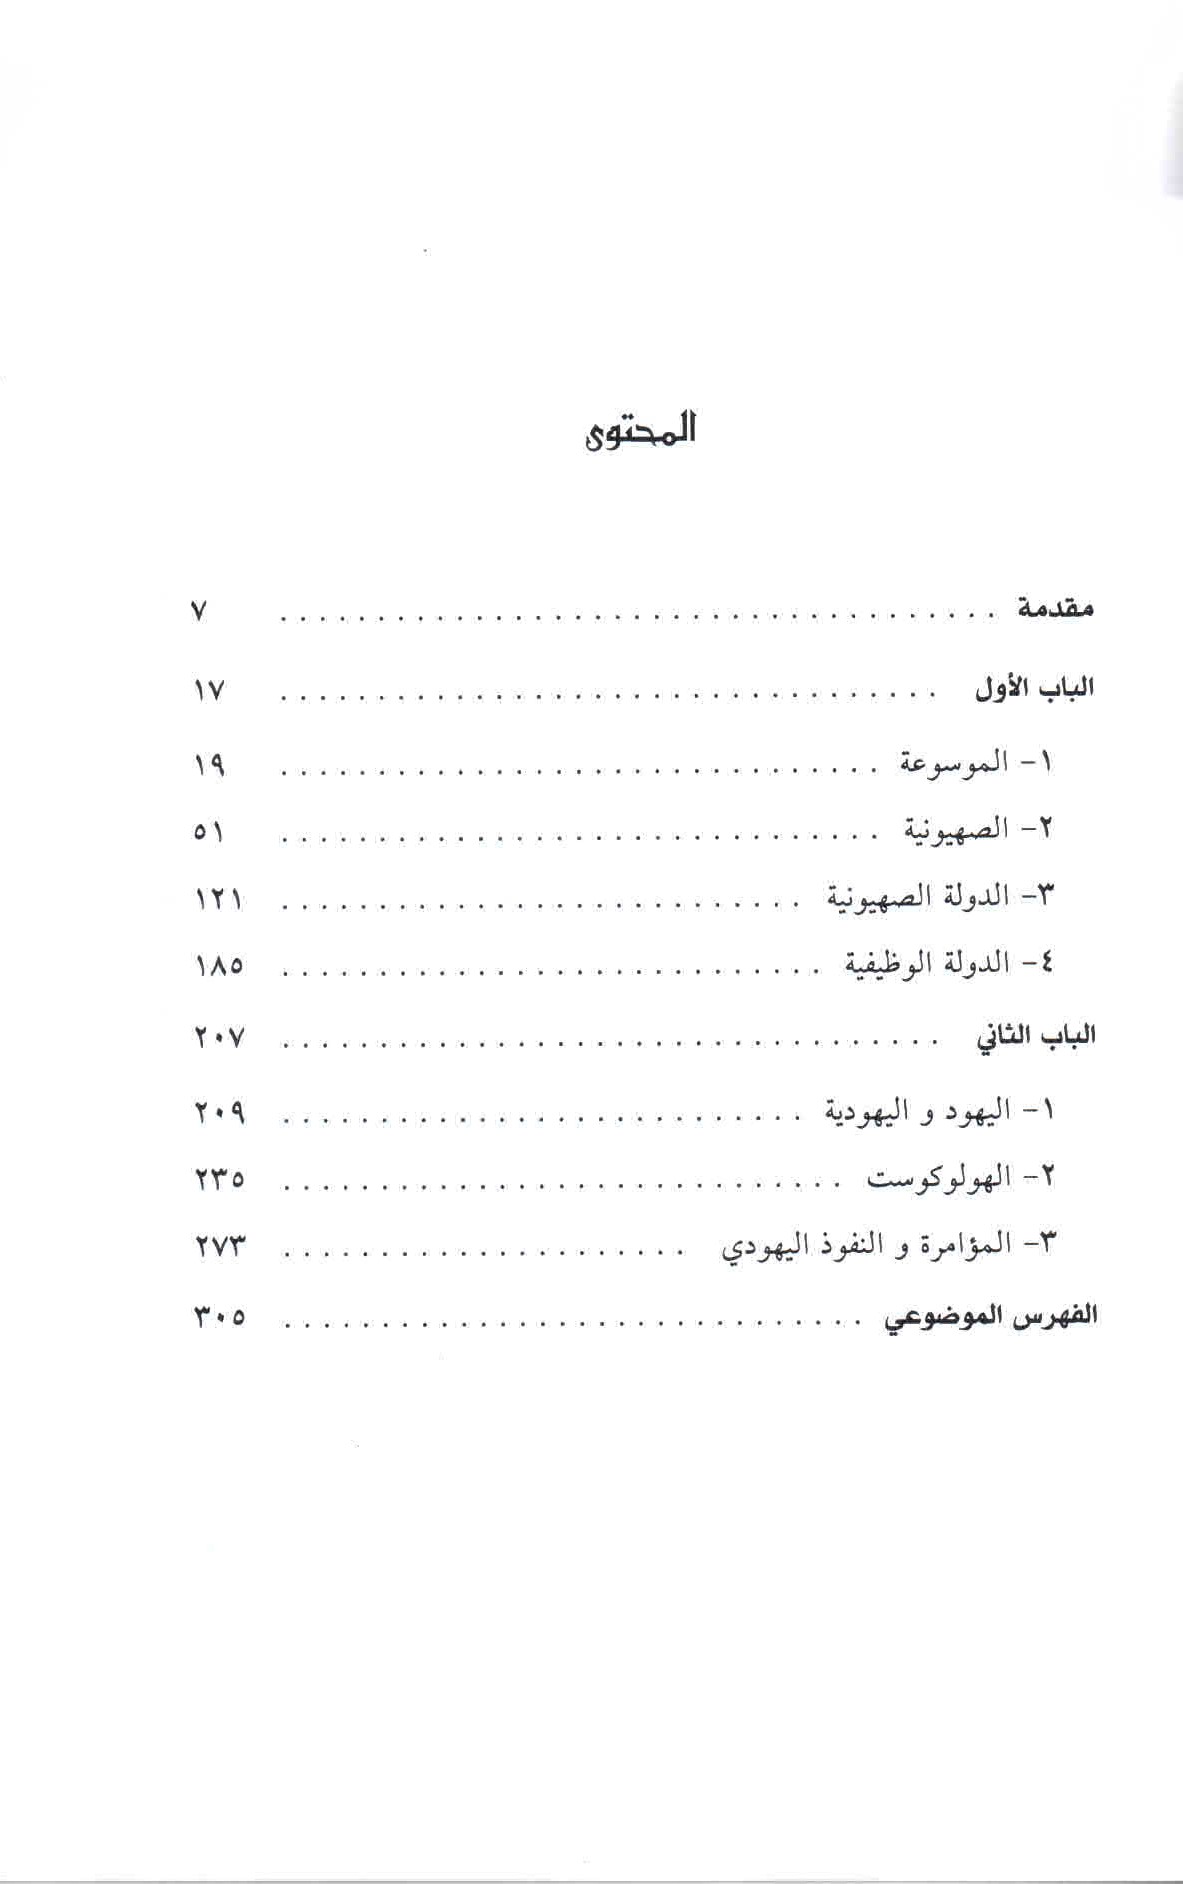 قائمة محتويات كتاب الصهيوني واليهودية.